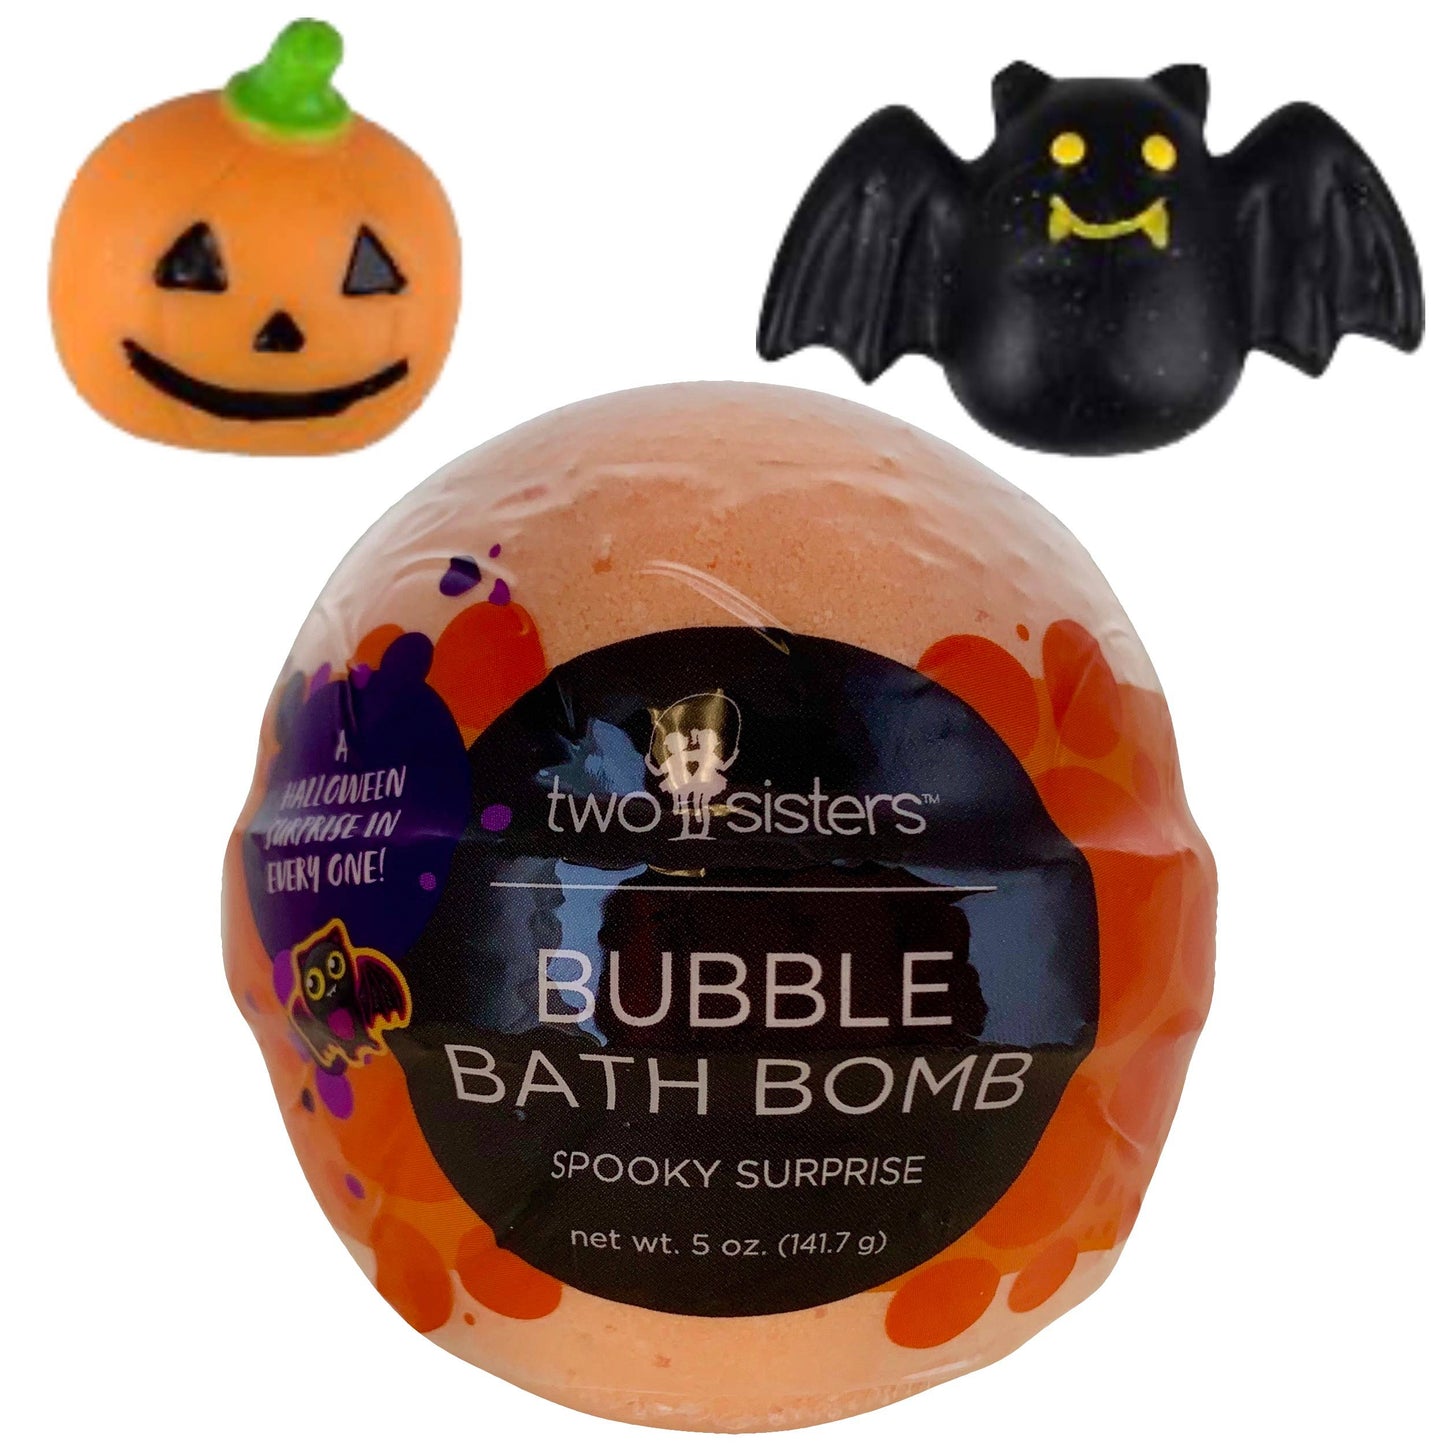 Spooky Surprise Halloween Bubble Bath Bomb with Kids Toy - supermanstuff.com